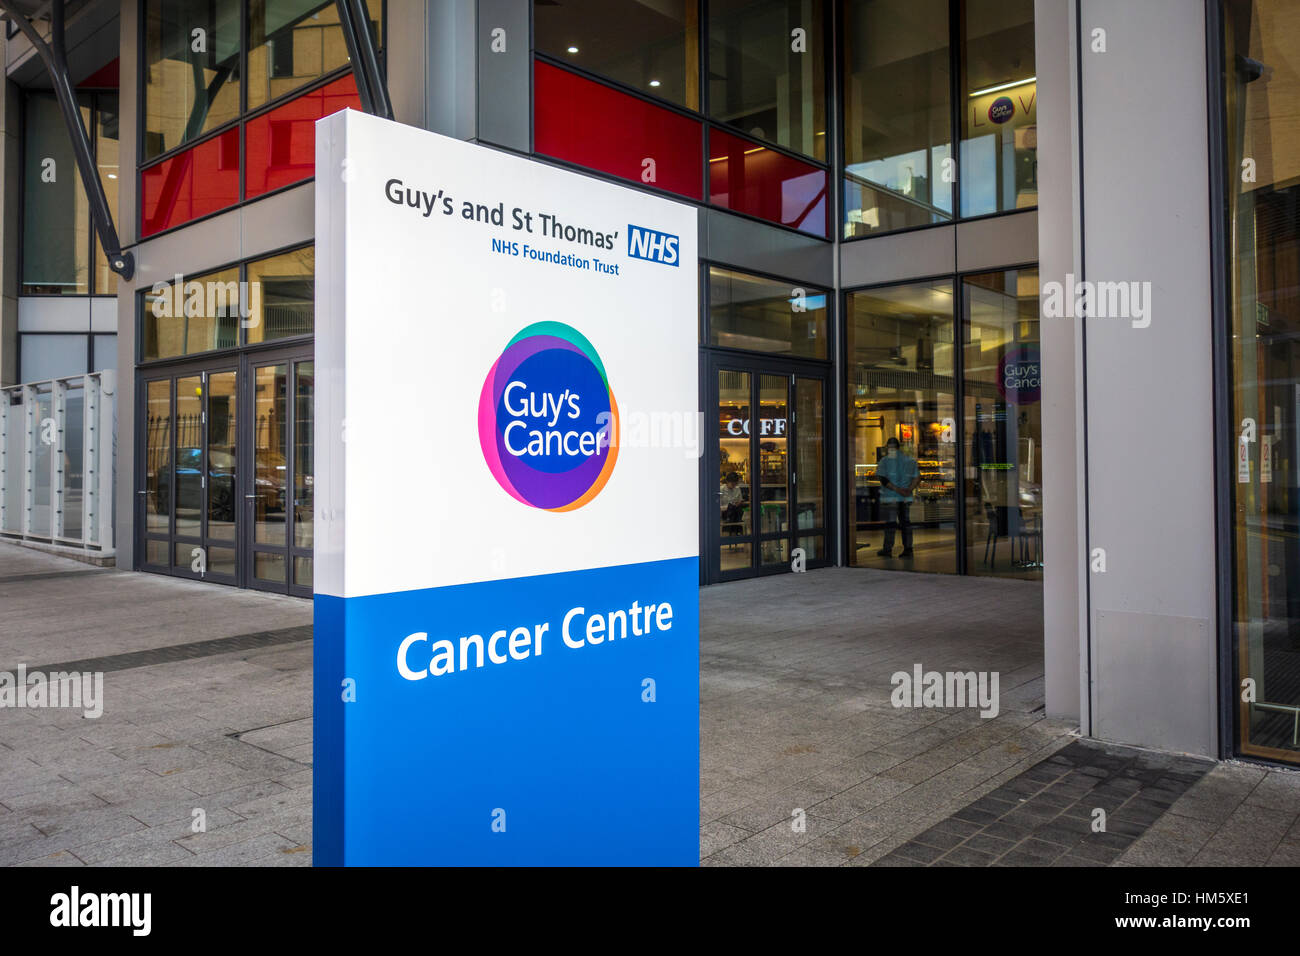 Cancer Centre affiche à l'extérieur de l'entrée de l'édifice, Guy's and St Thomas' Hospital, Londres, Royaume-Uni Banque D'Images